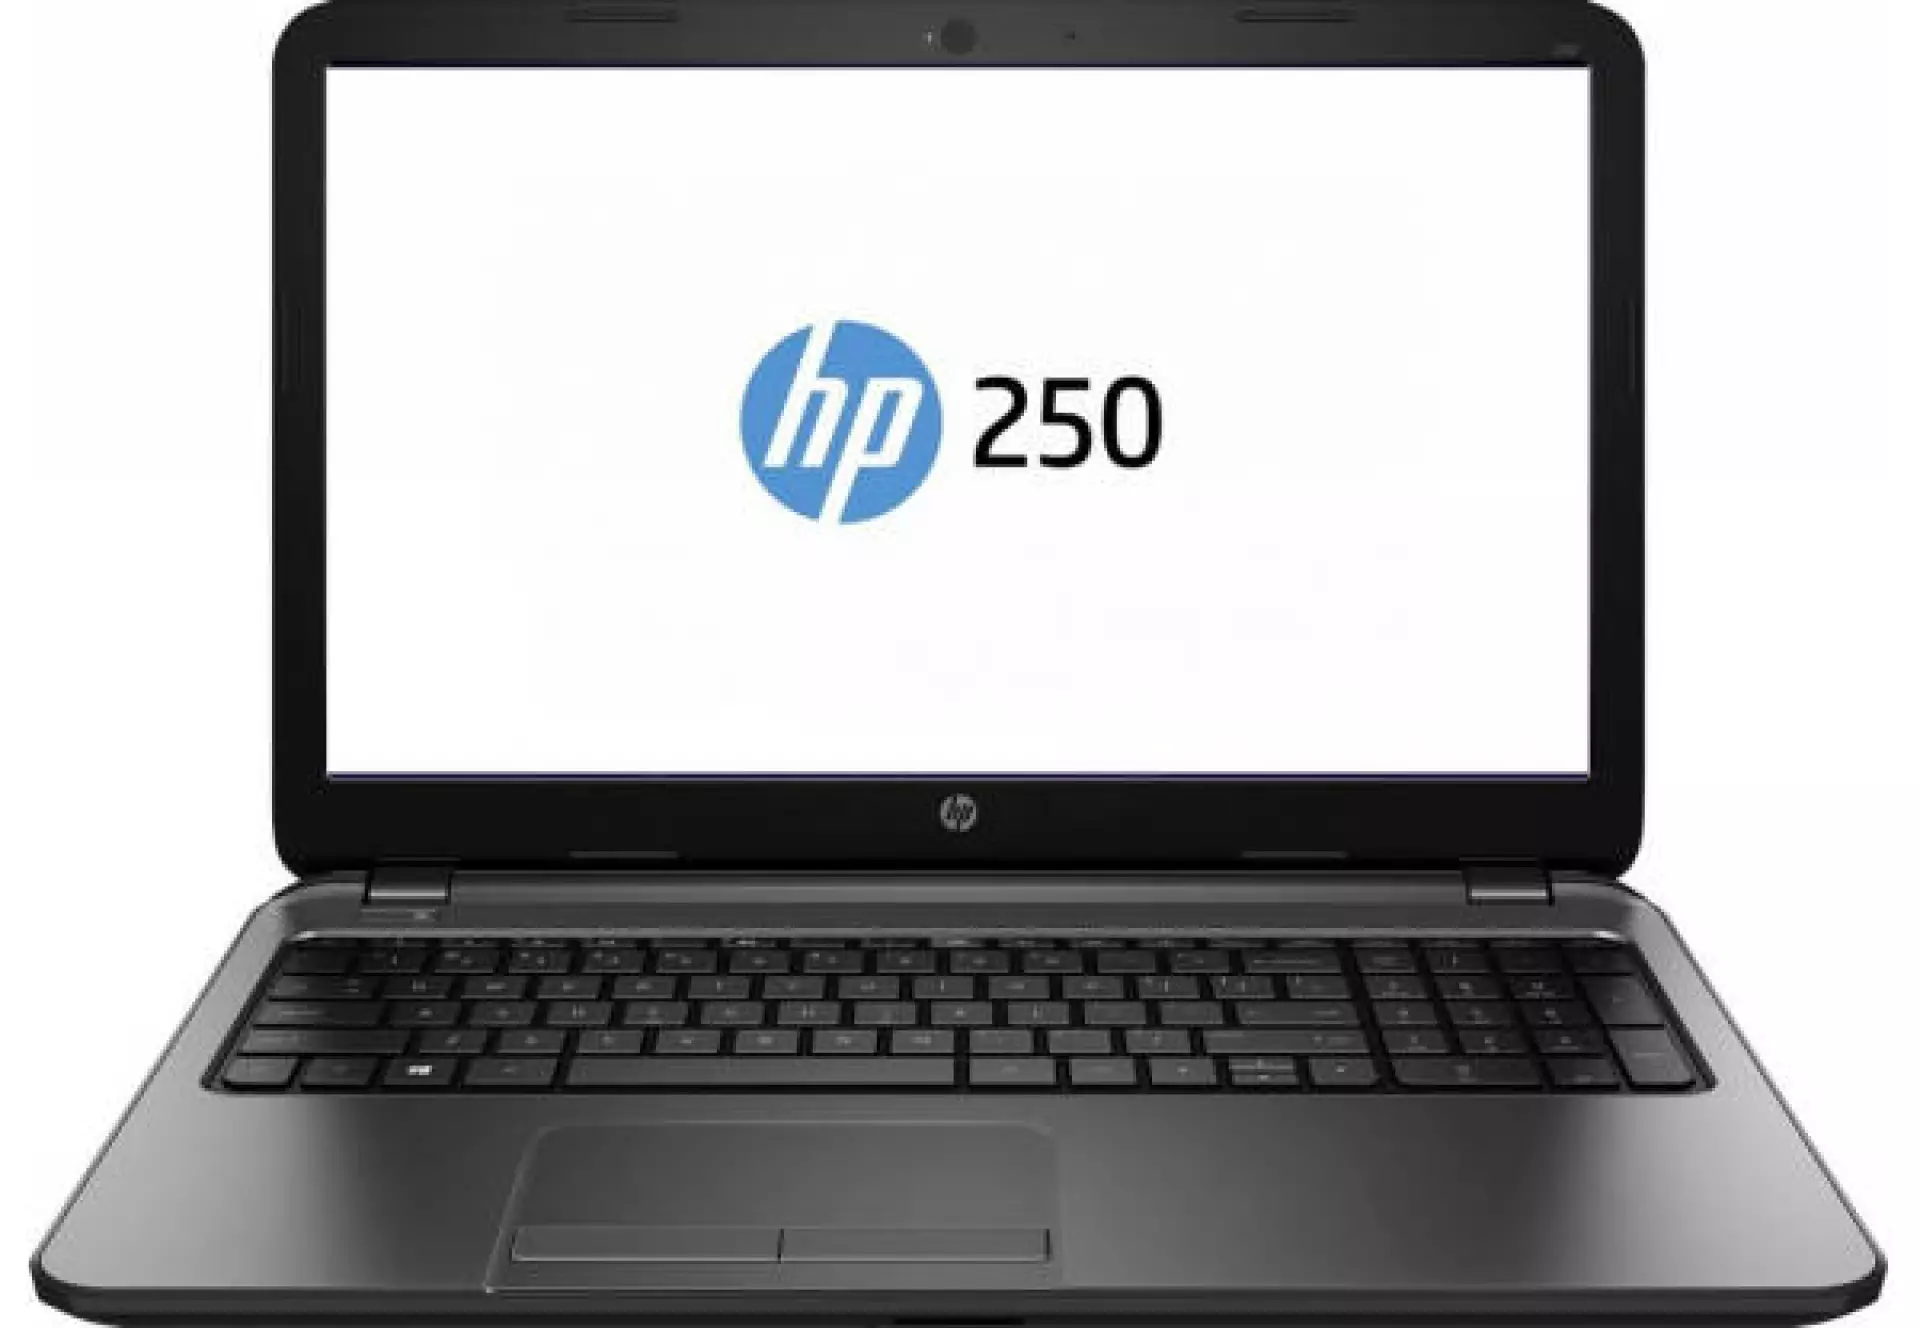 HP Notebook 250 G5 W4N48EA